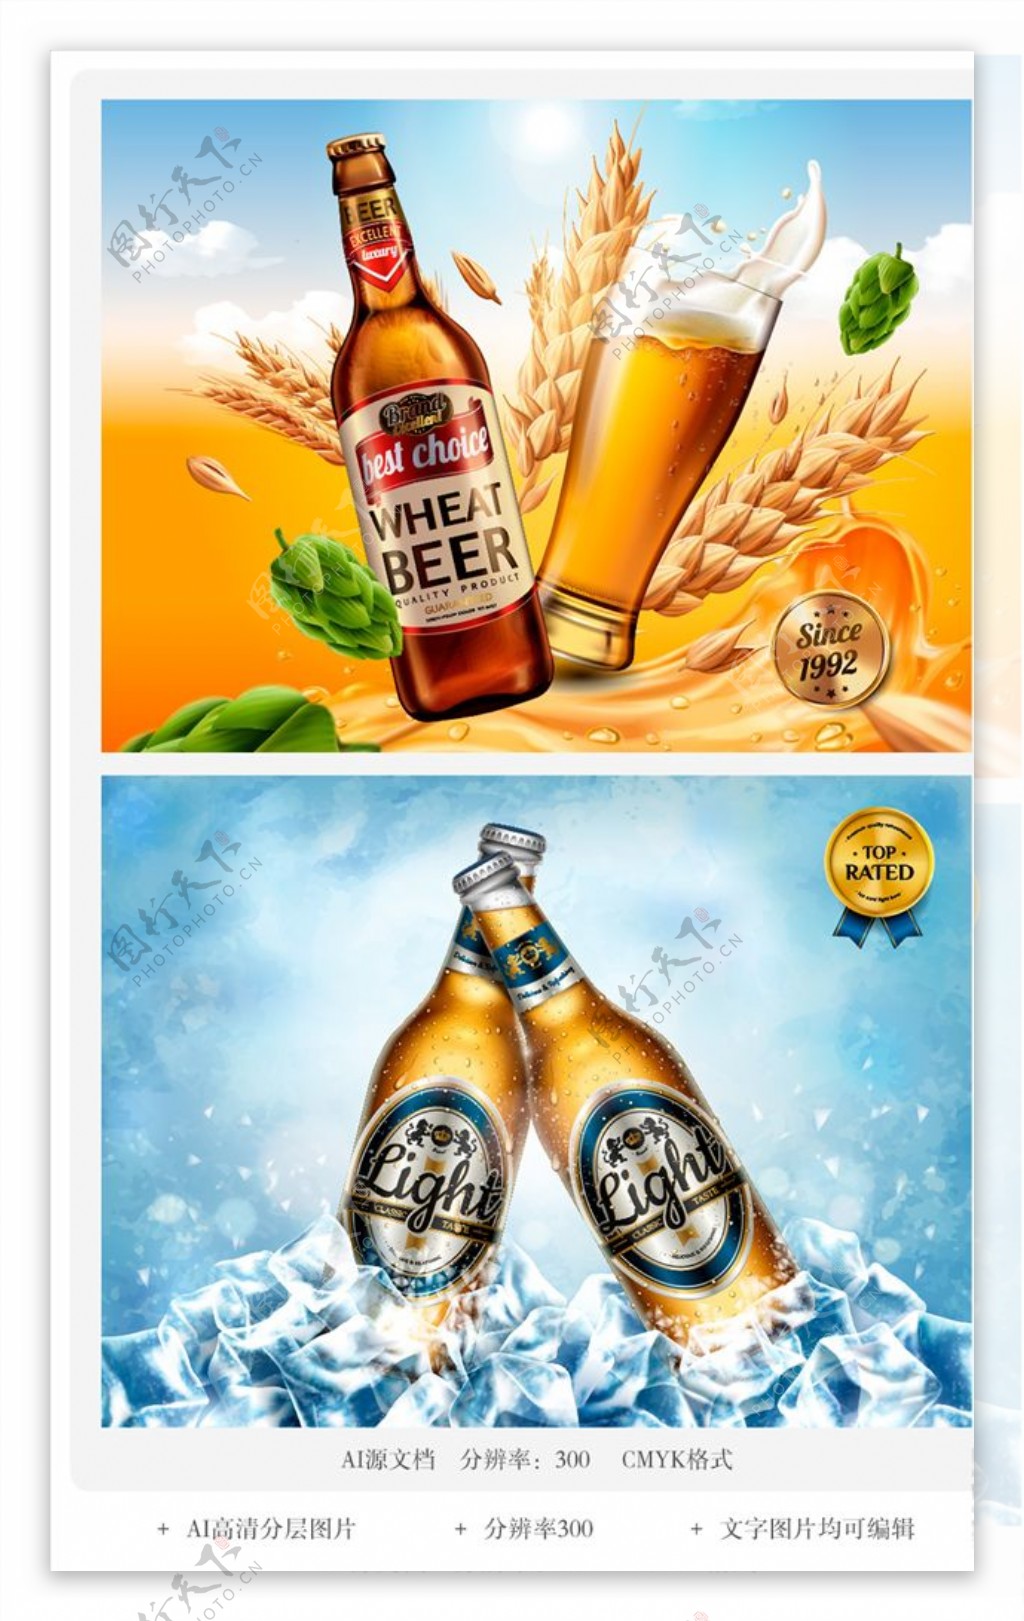 夏日啤酒派对DM广告宣传单海报